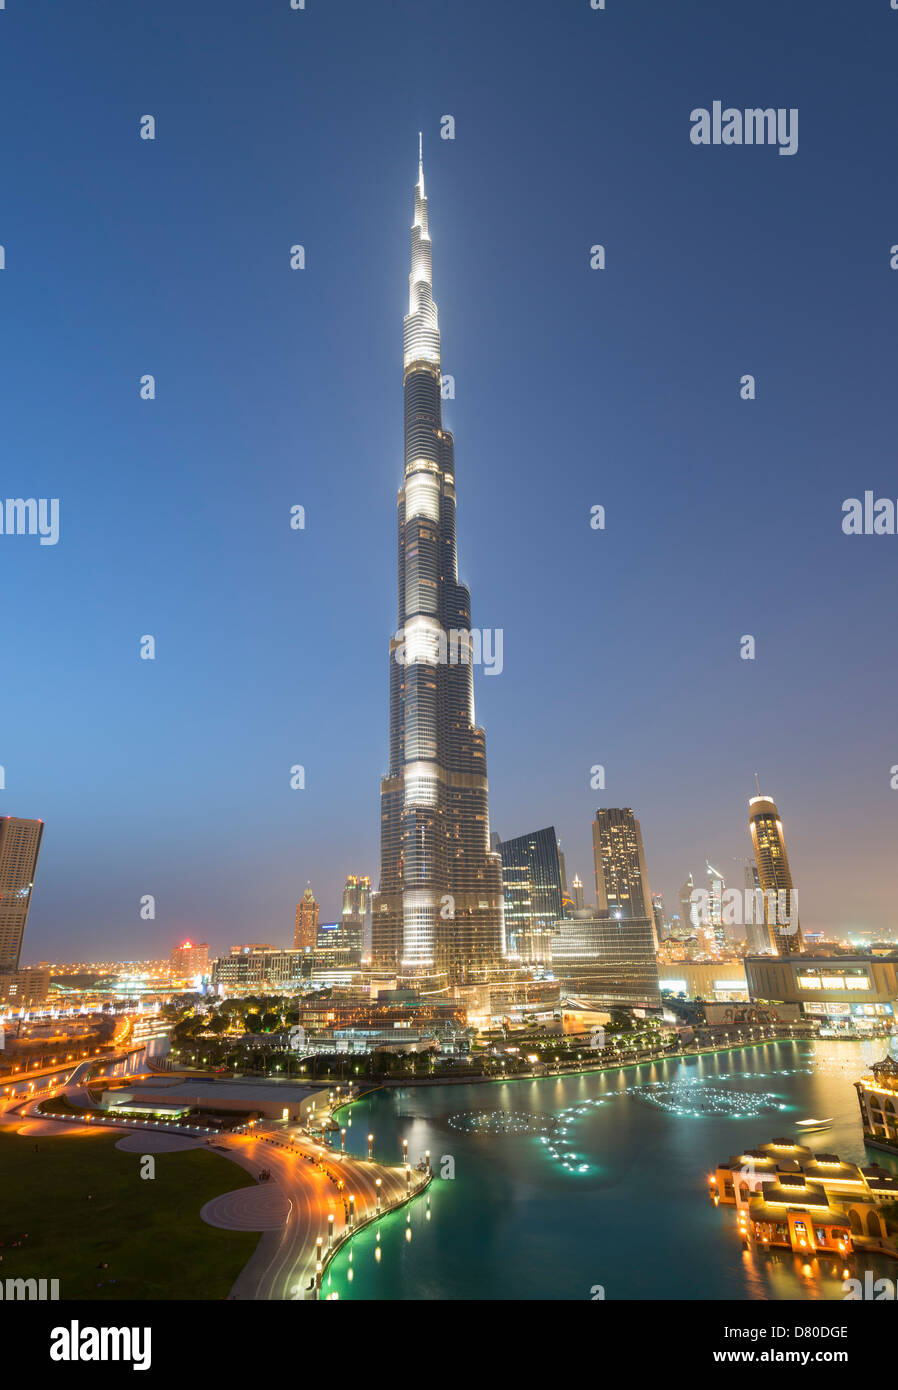 Vue nocturne de la tour Burj Khalifa, plus haut bâtiment du monde à Dubaï Émirats Arabes Unis Banque D'Images